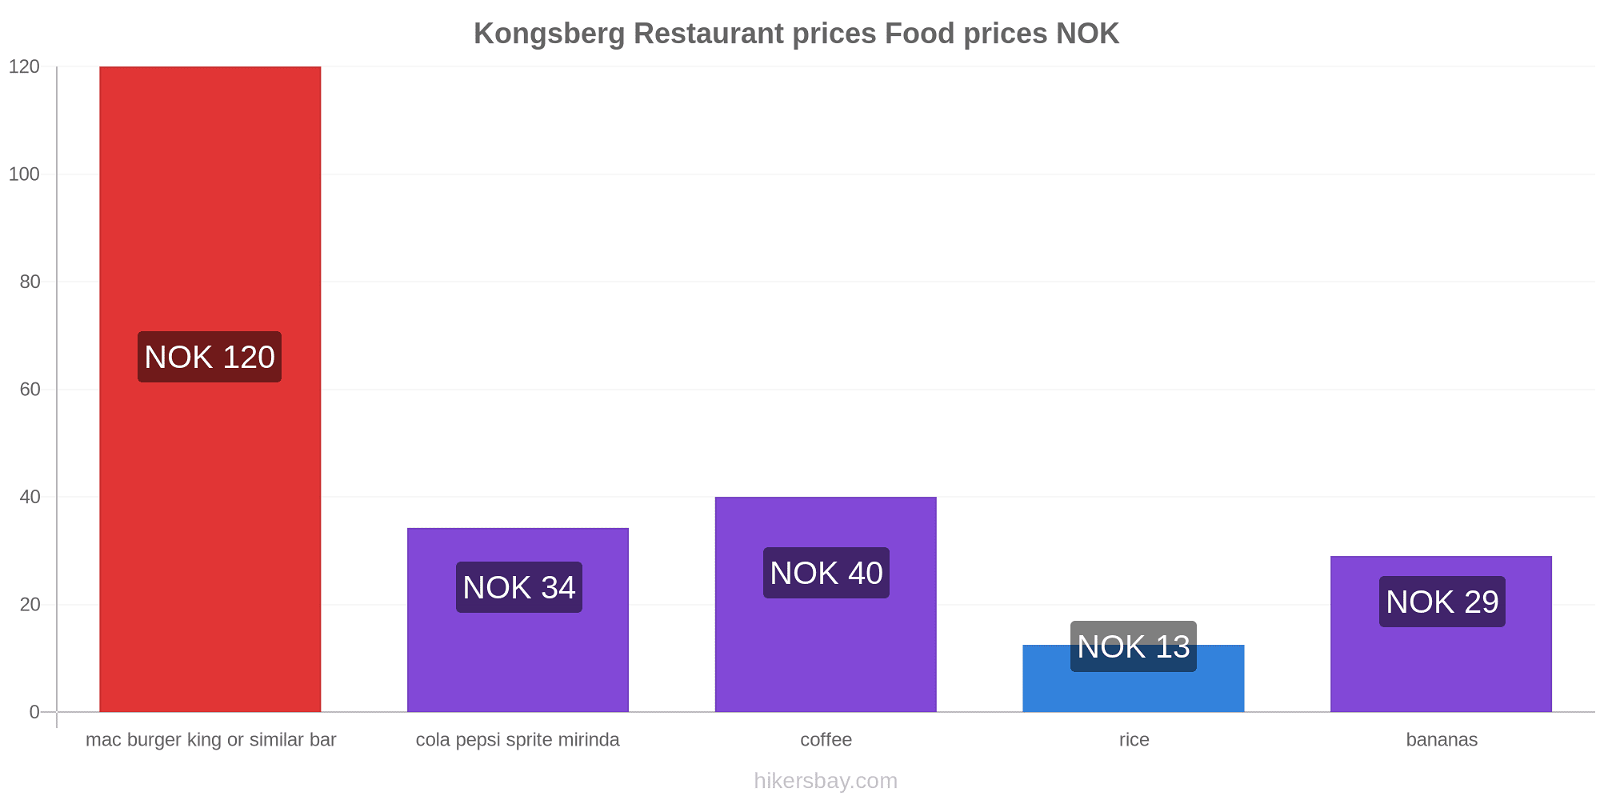 Kongsberg price changes hikersbay.com